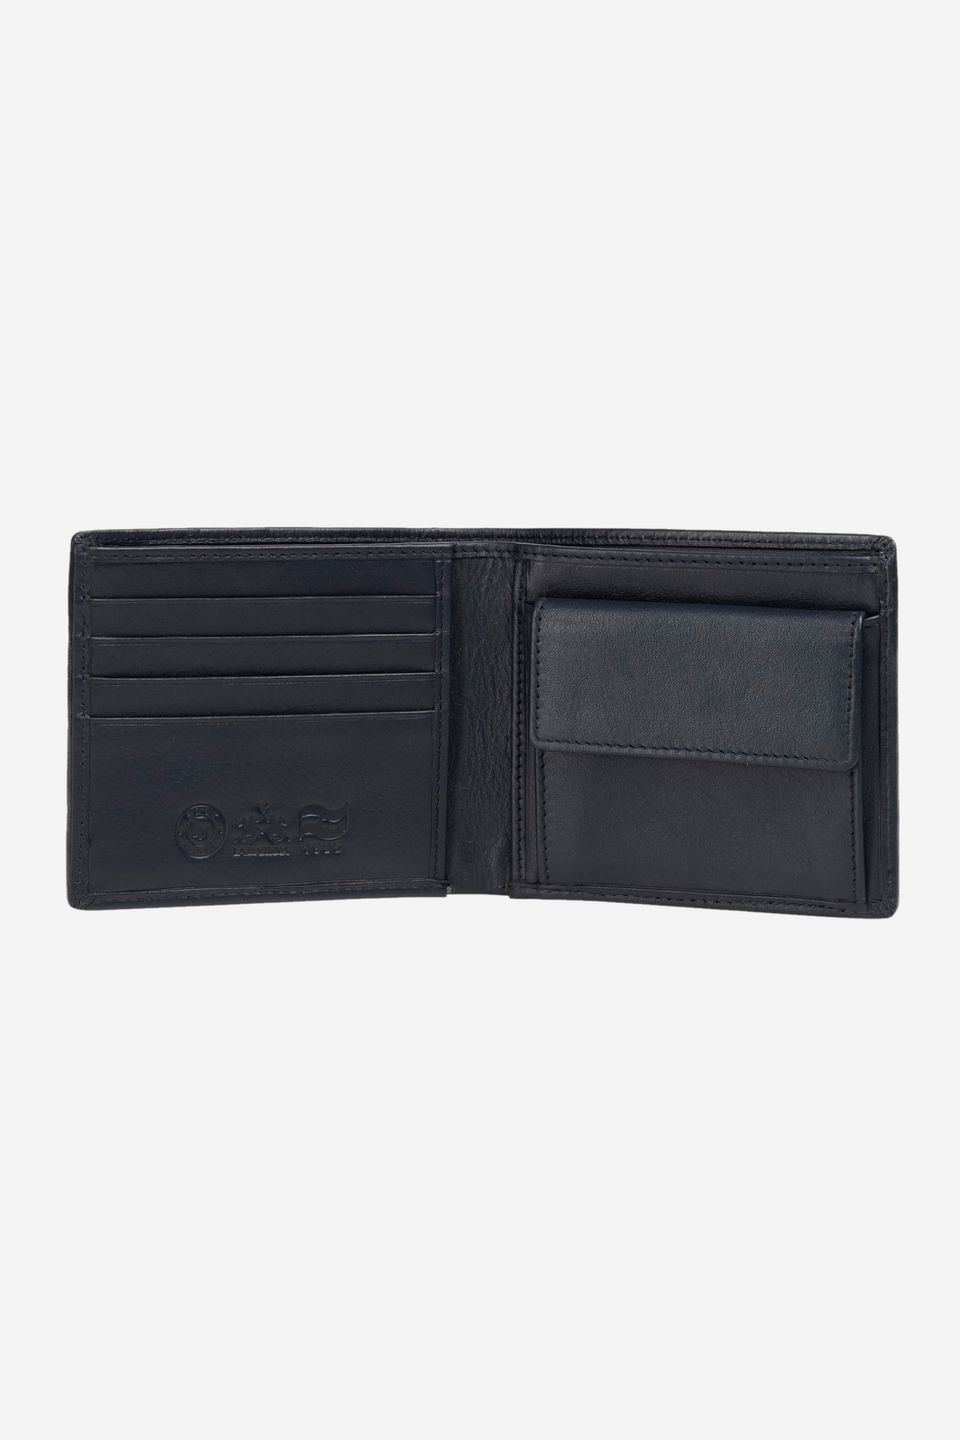 Leather wallet - Lopez | La Martina - Official Online Shop